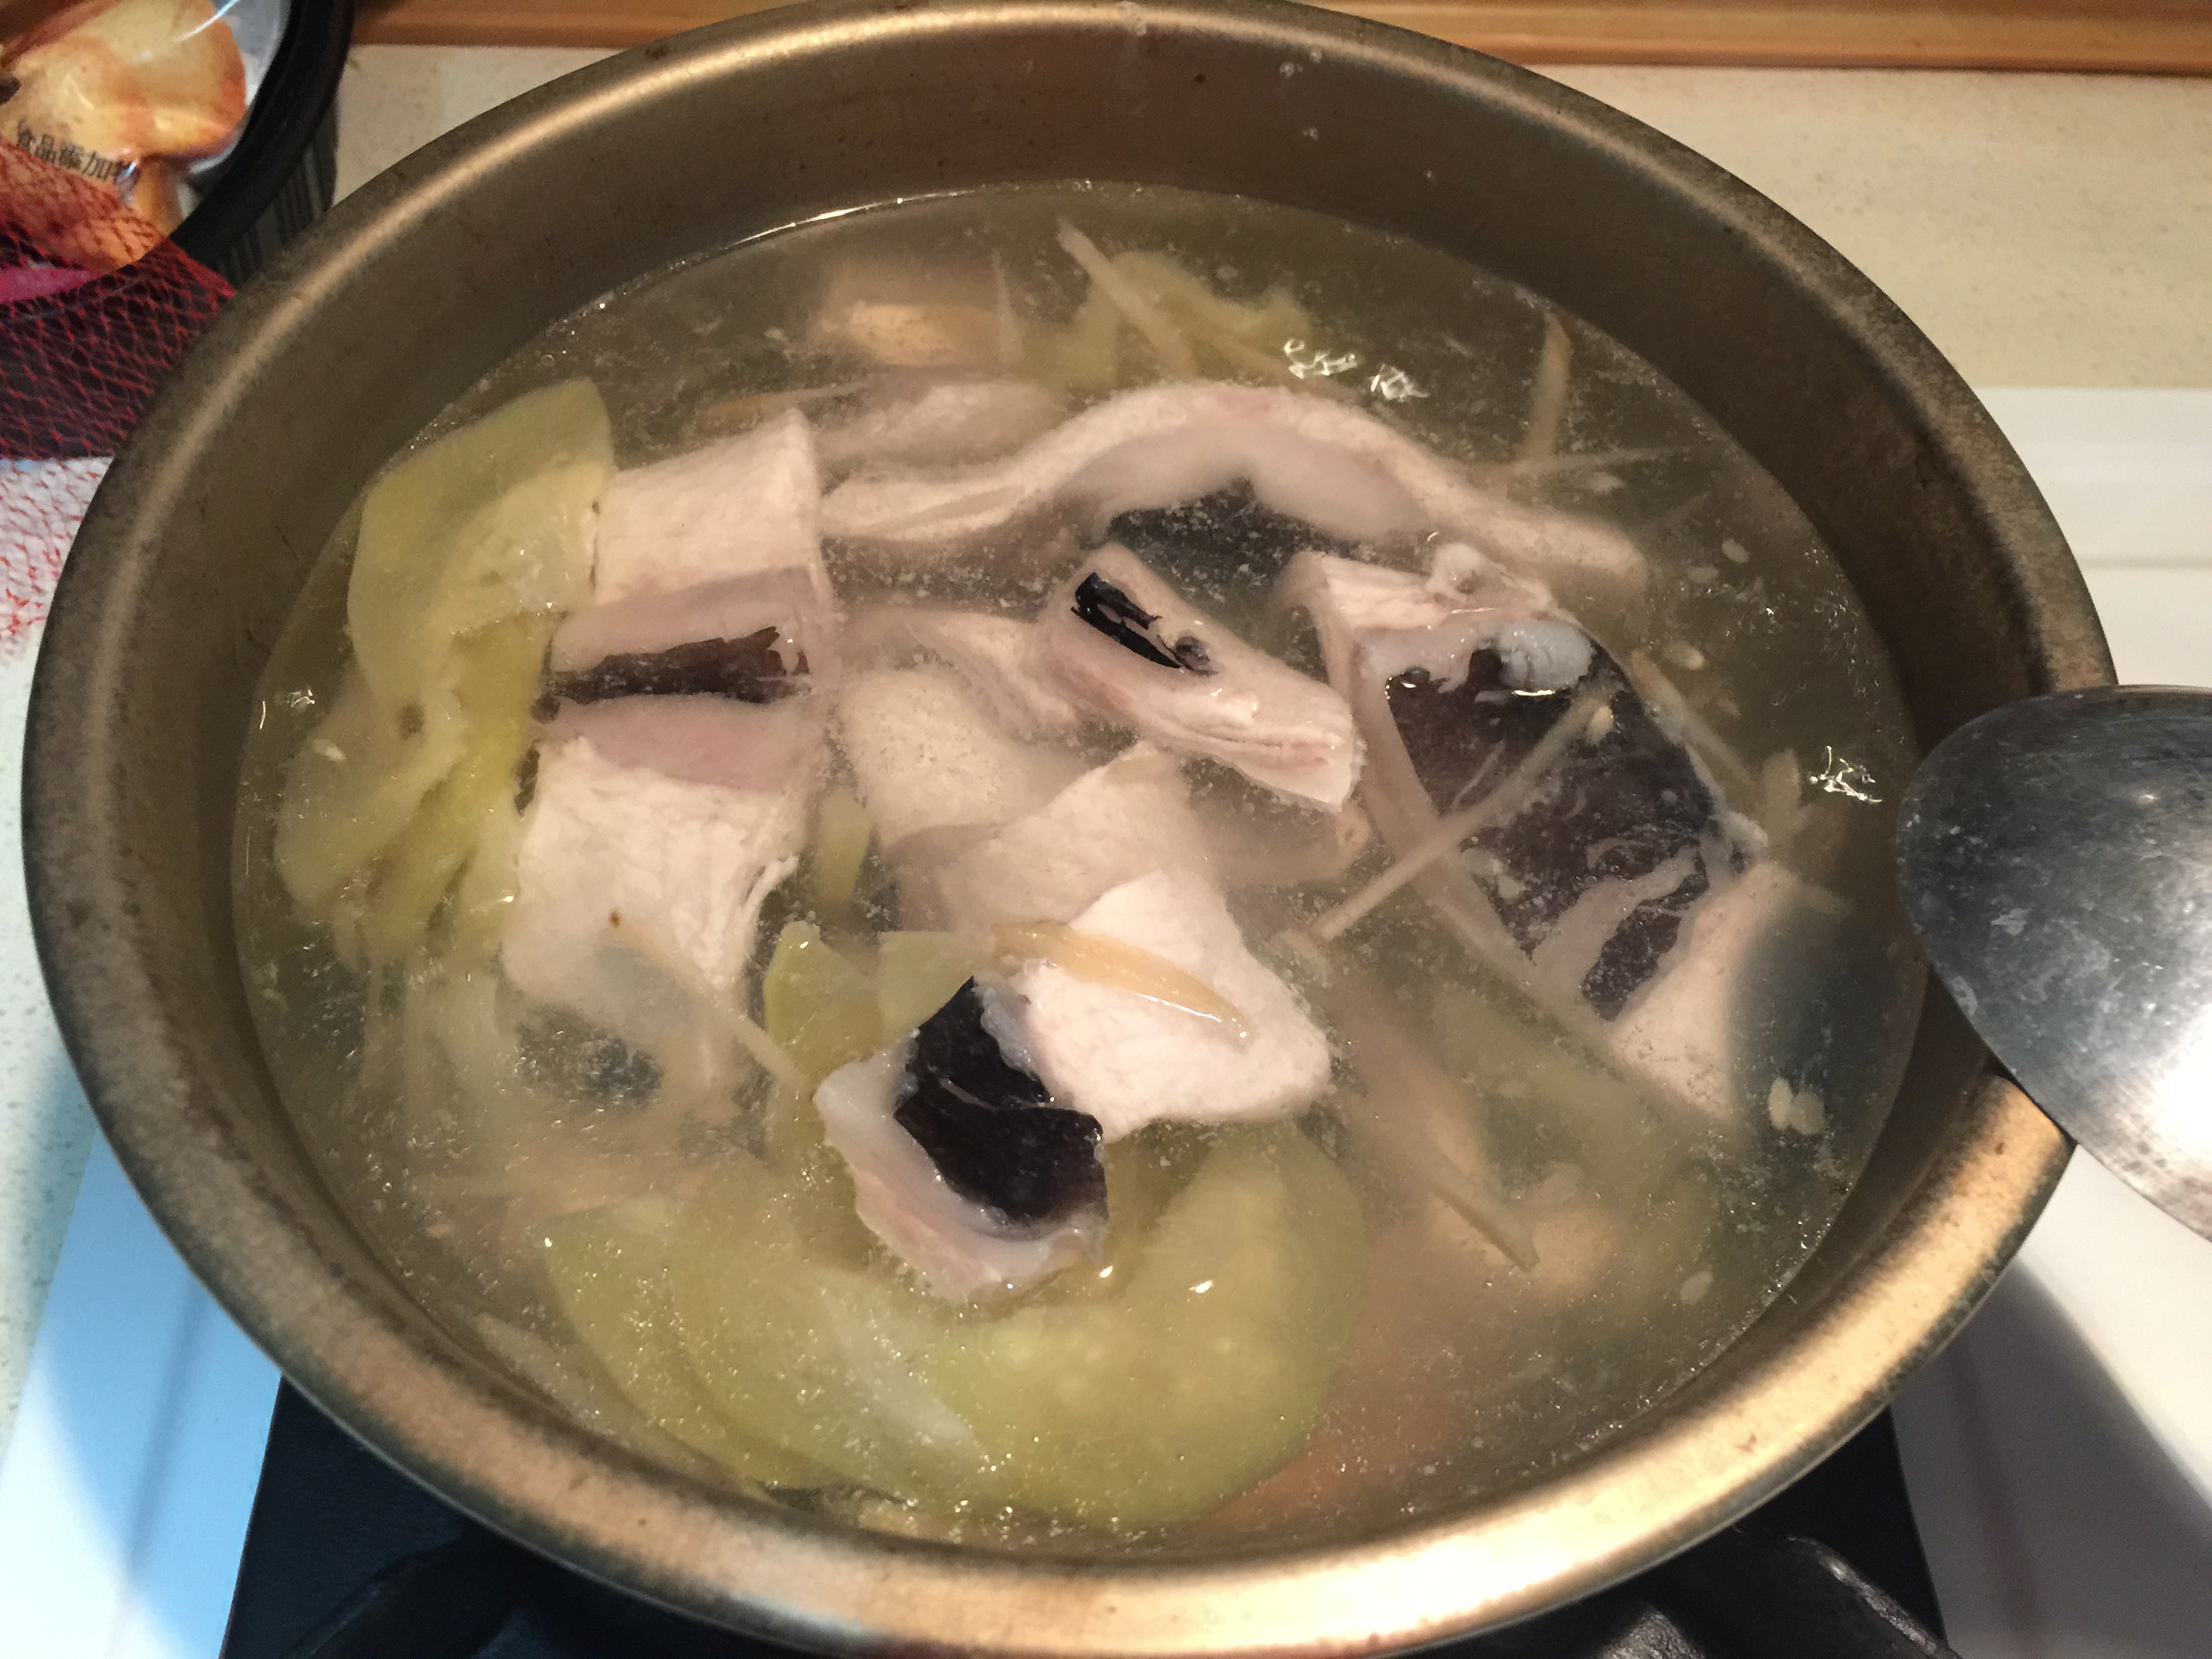 西瓜綿虱目魚湯